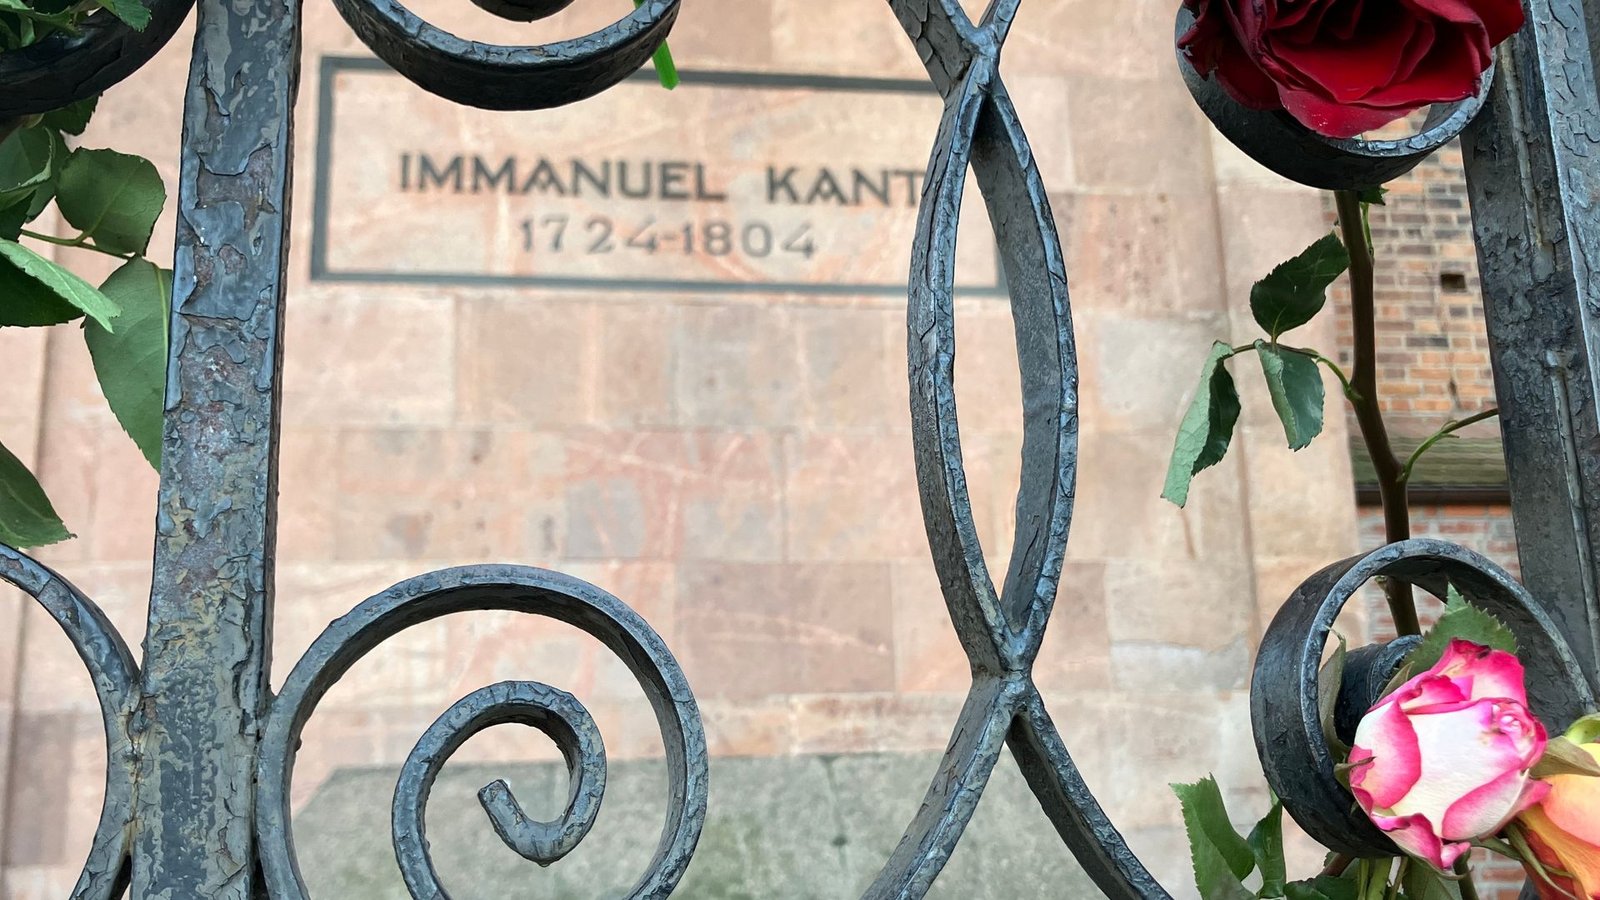 Blumen schmücken die Grabstelle von Immanuel Kant in Kaliningrad.Foto: Andre Ballin/dpa